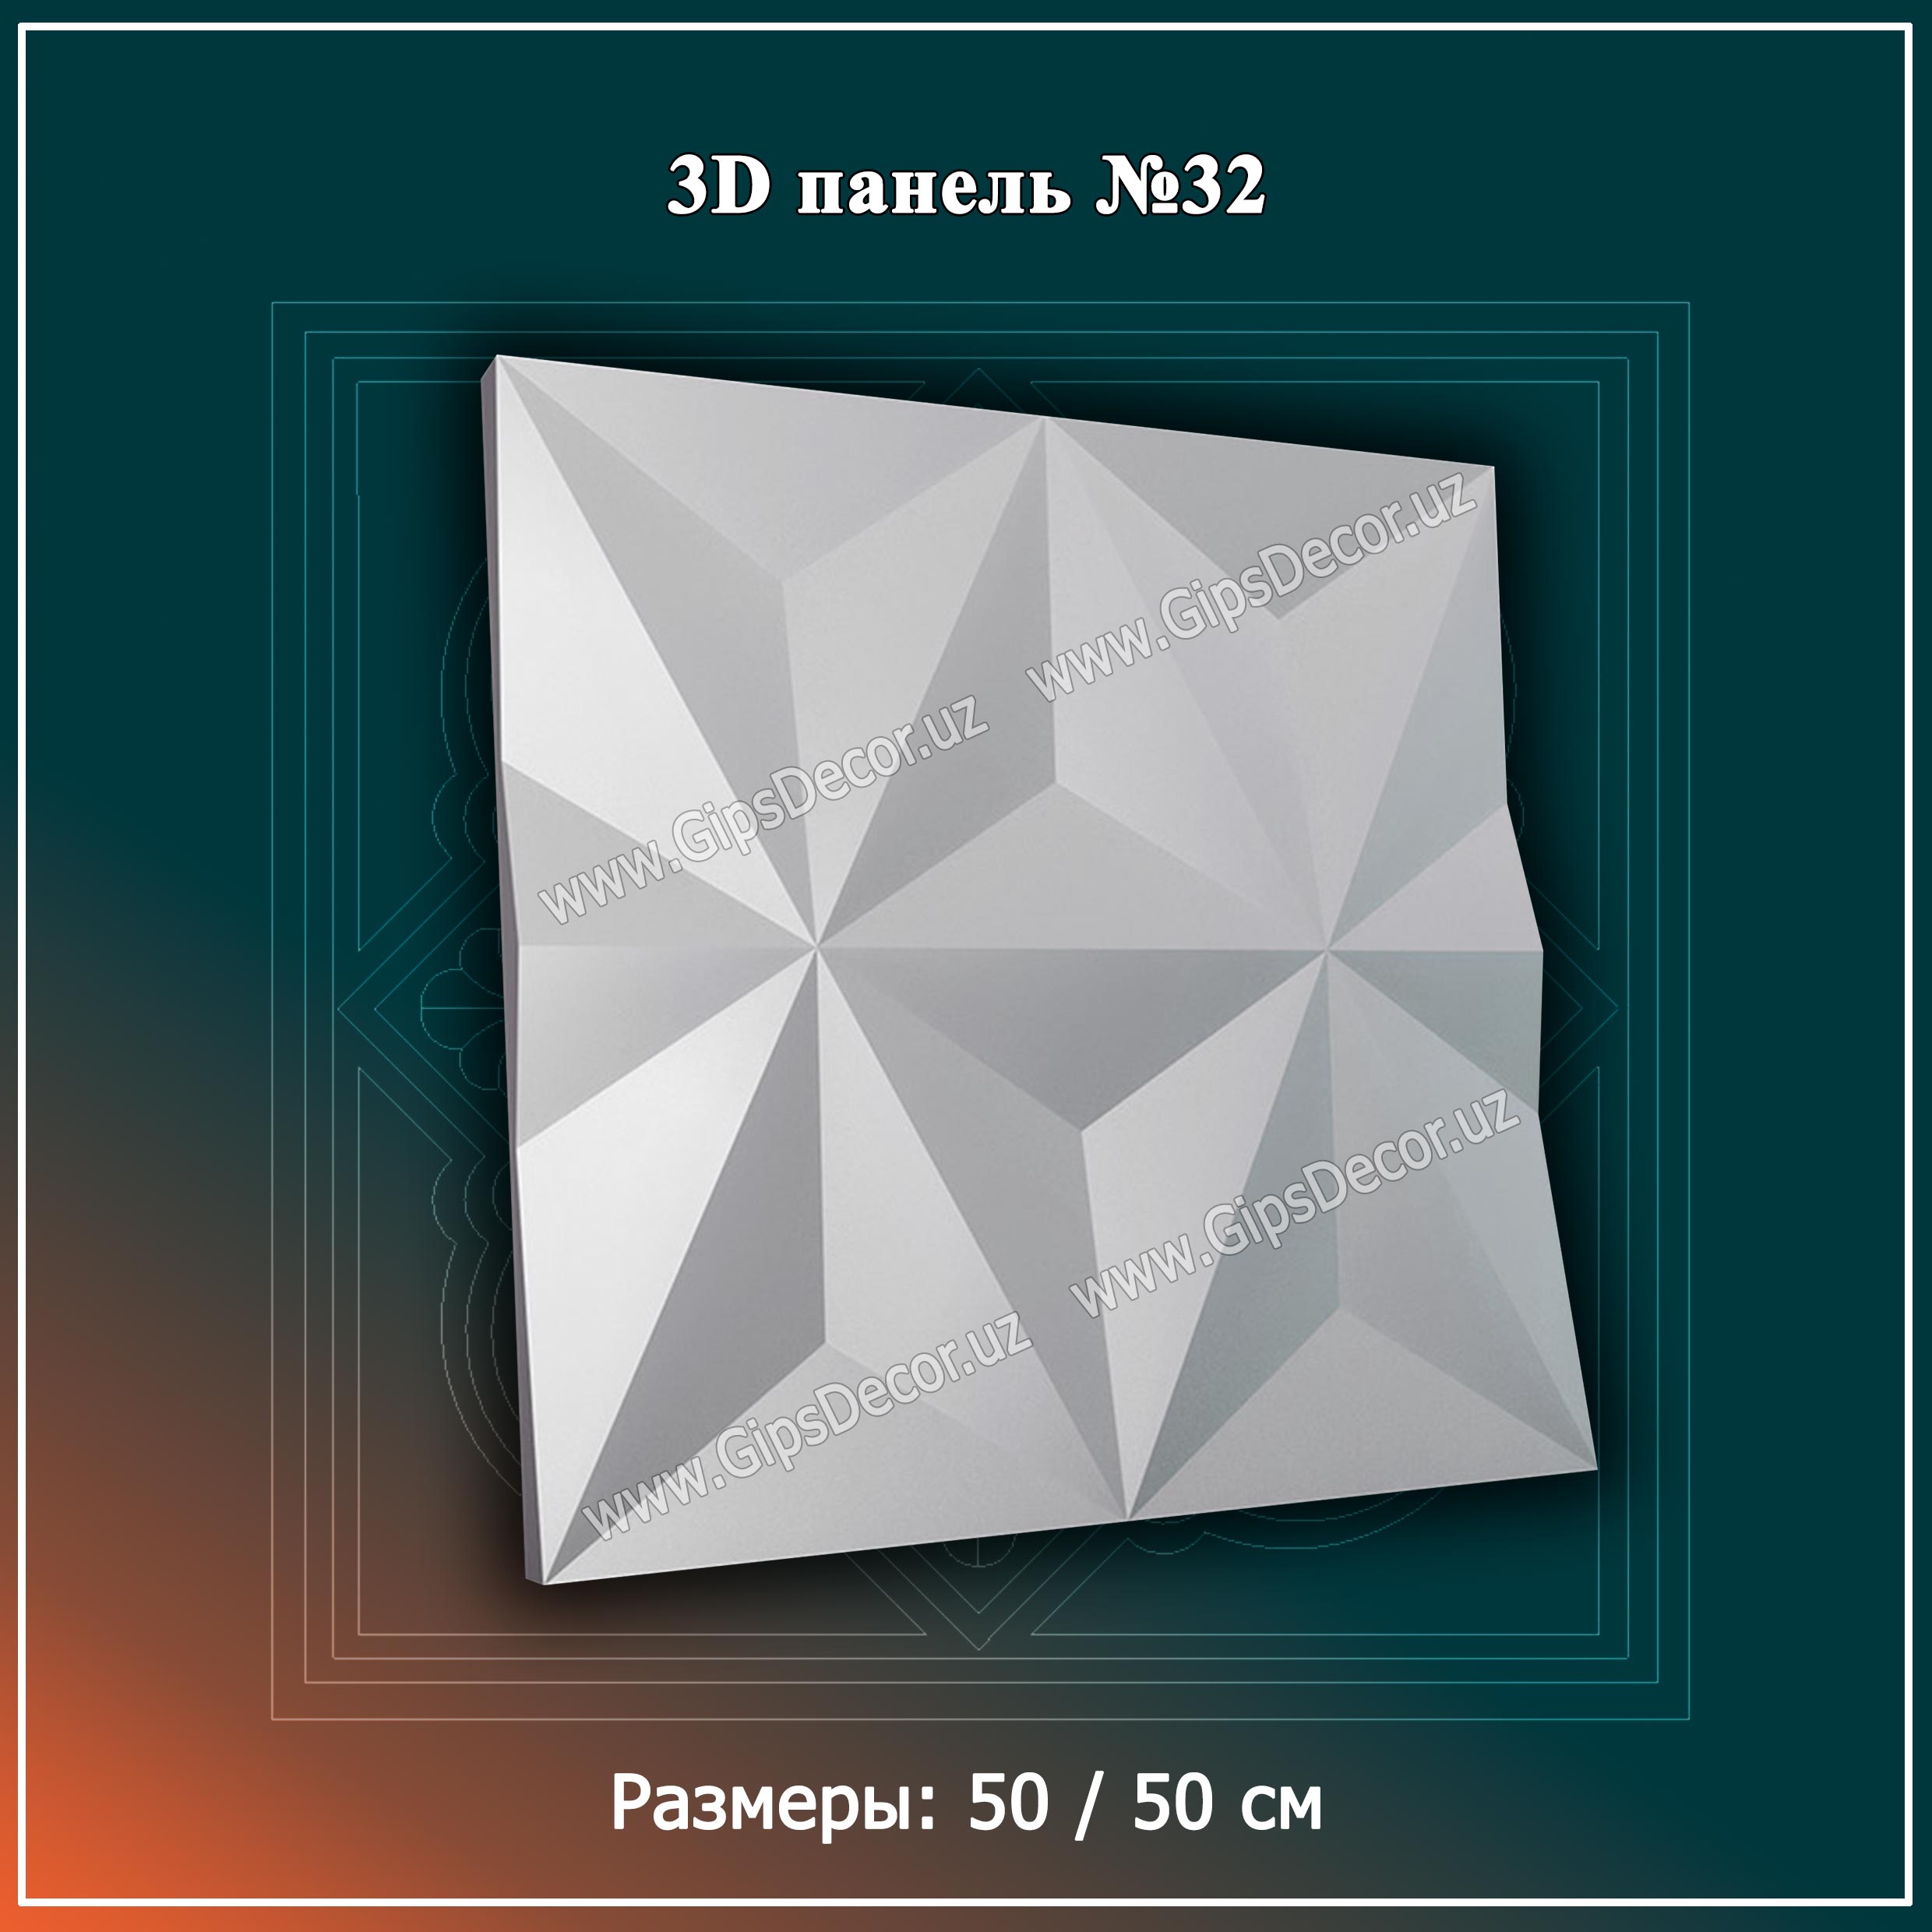 3D панель №32